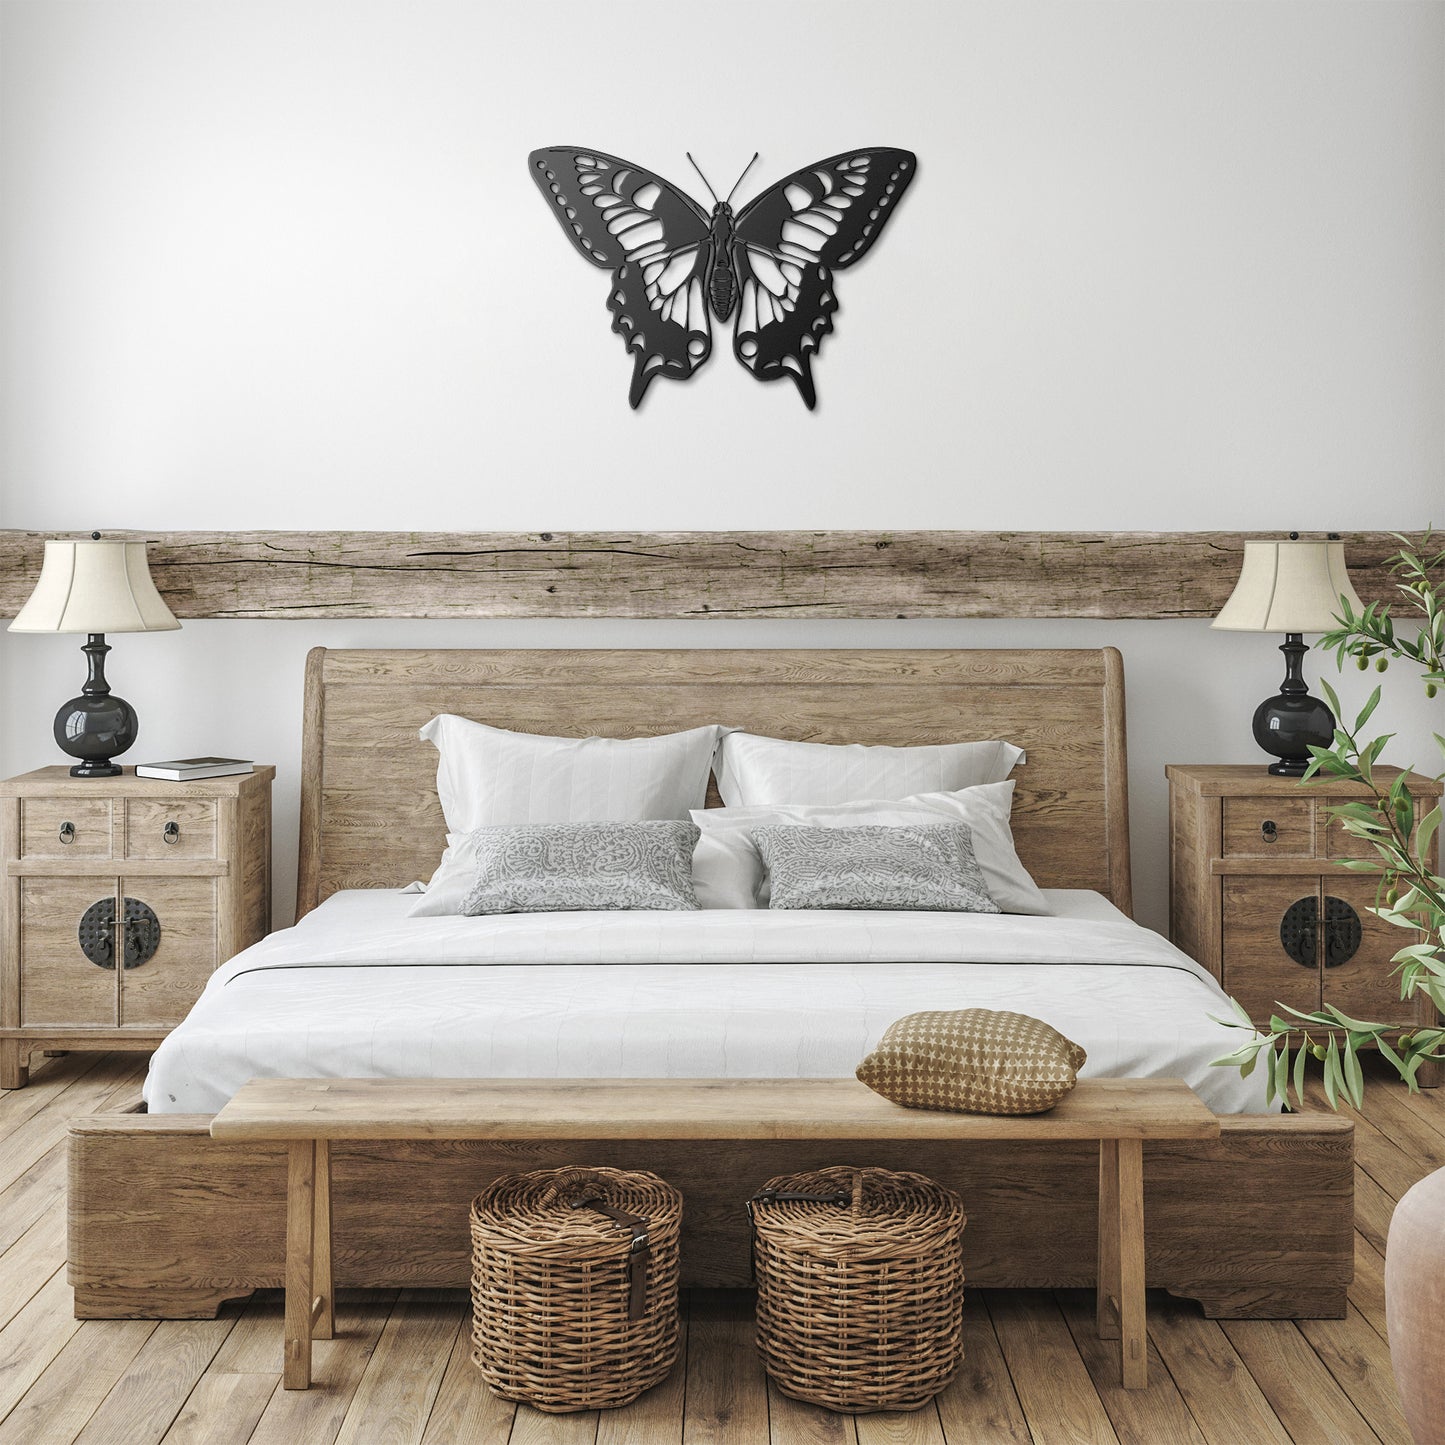 Beautiful Butterfly Metal Wall Art